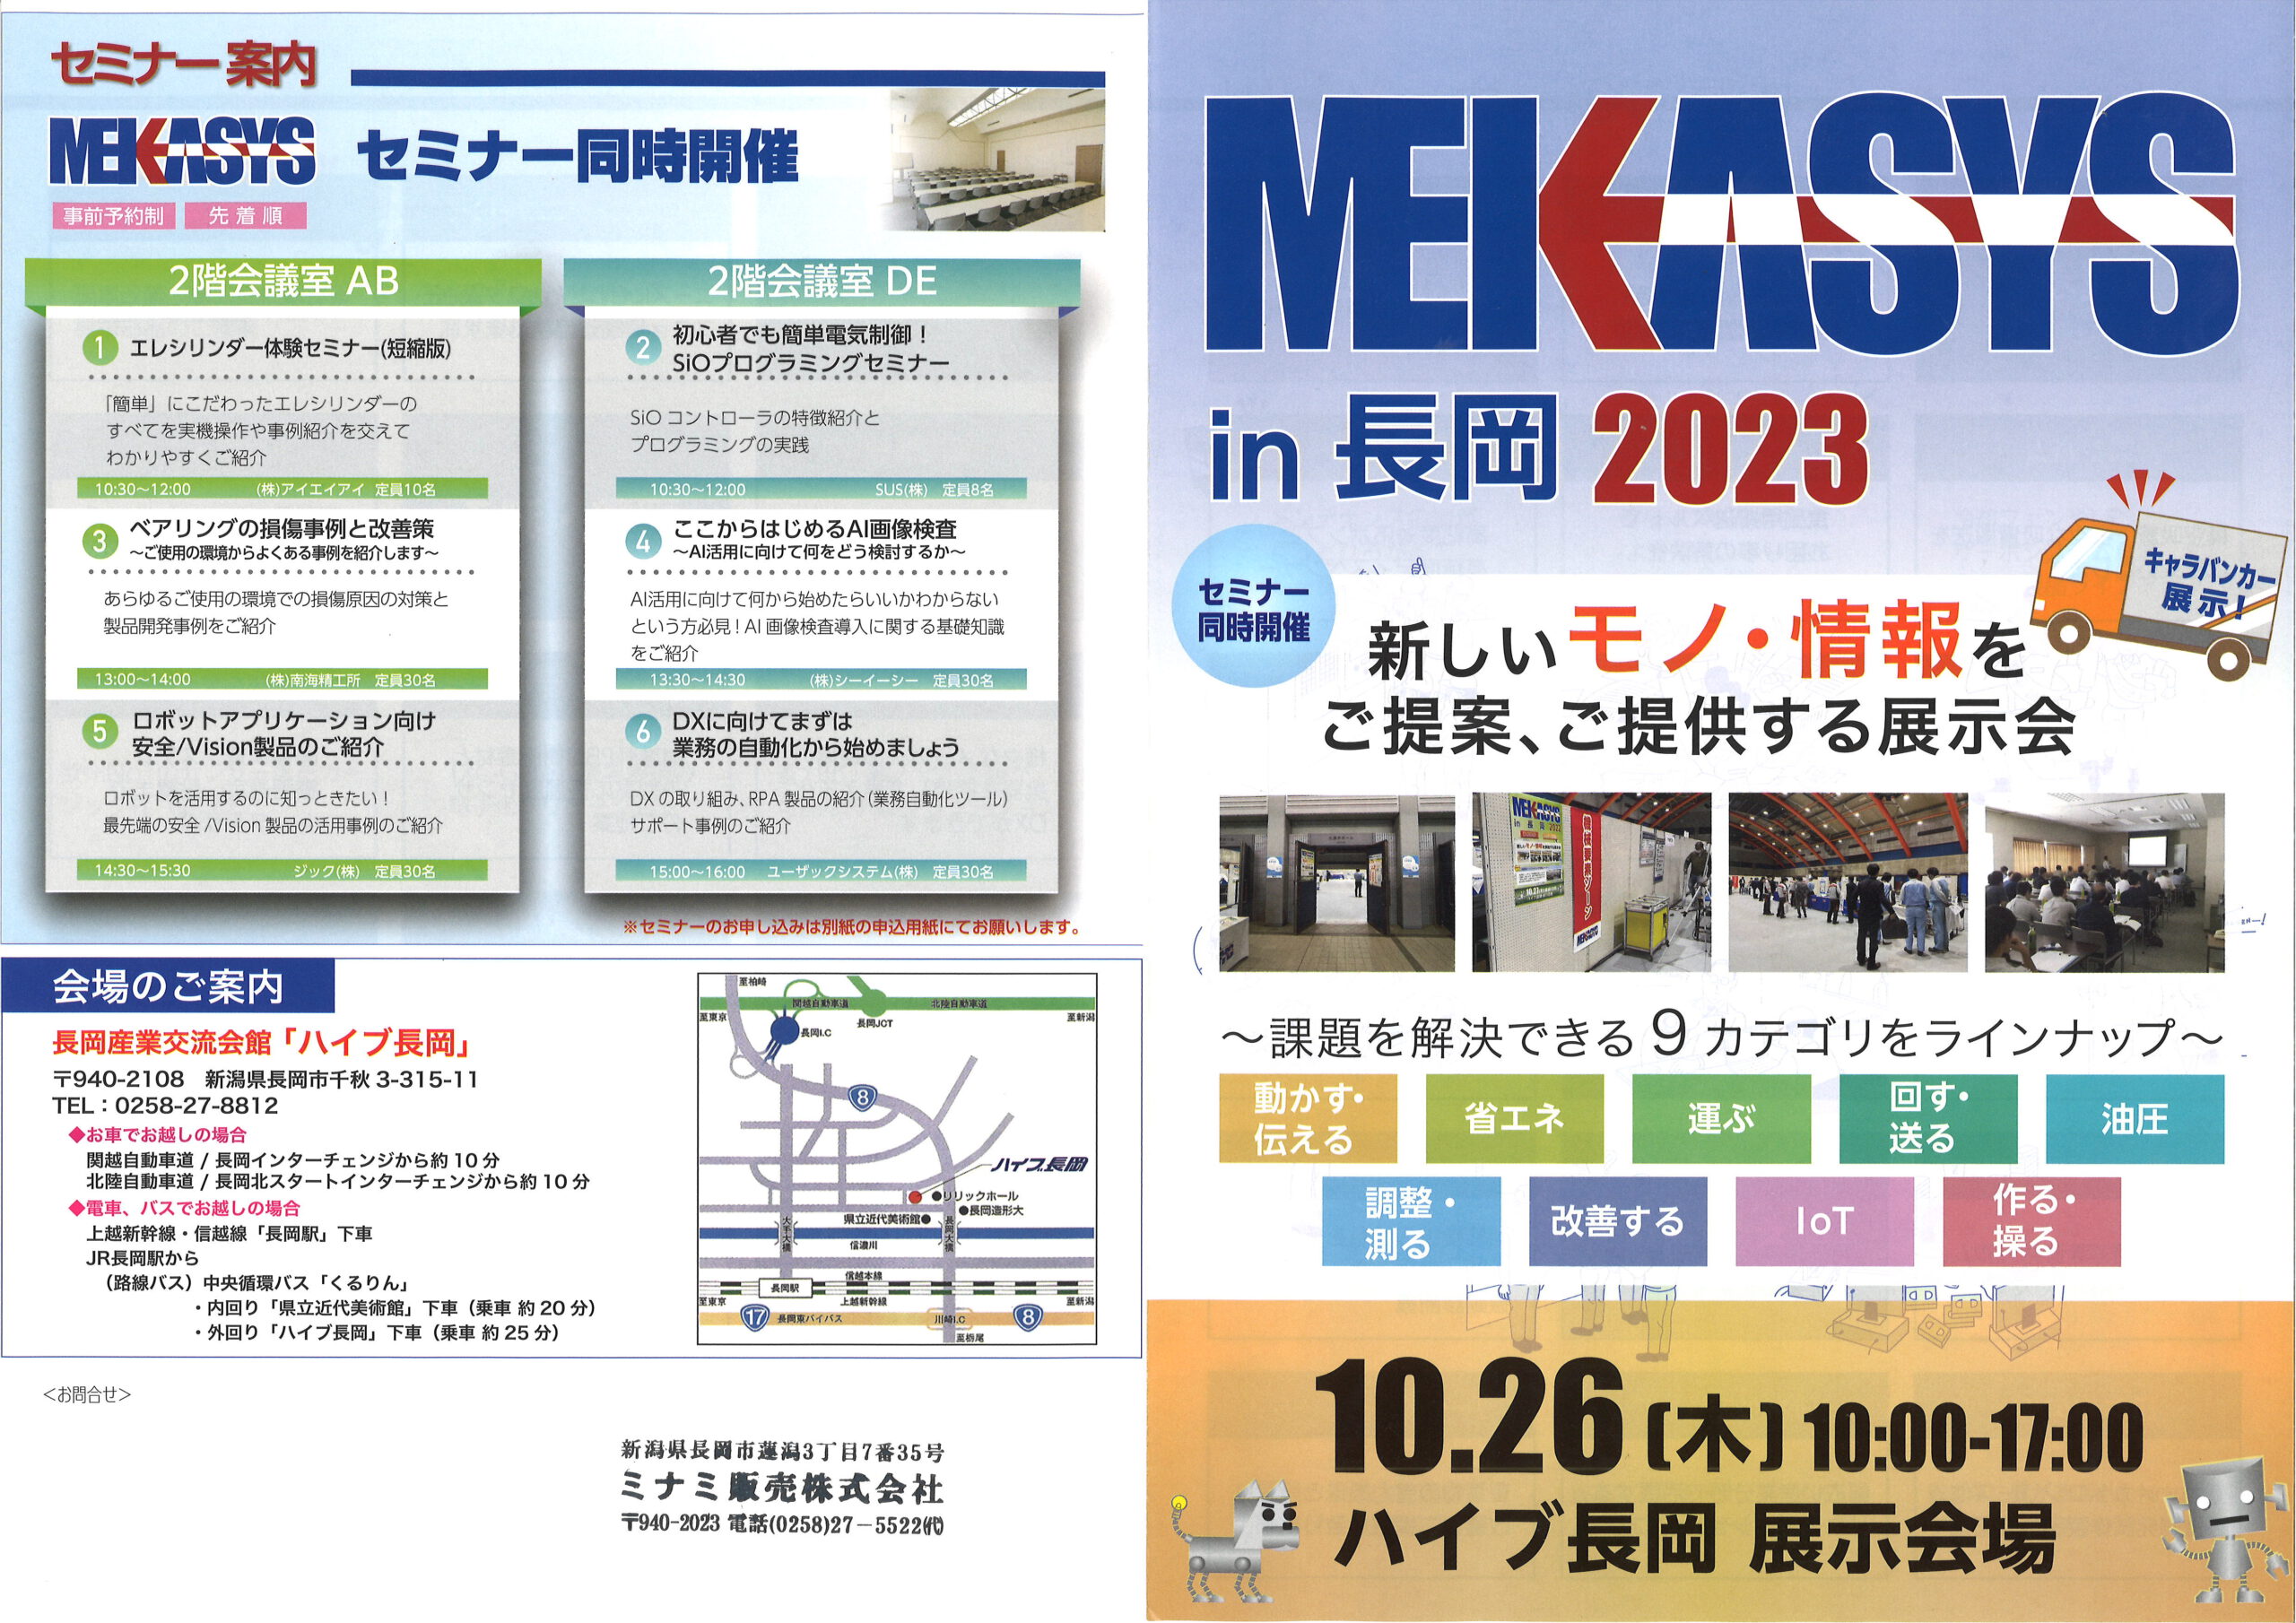 MEKASYS in 長岡 2023 展示会のご案内イメージ